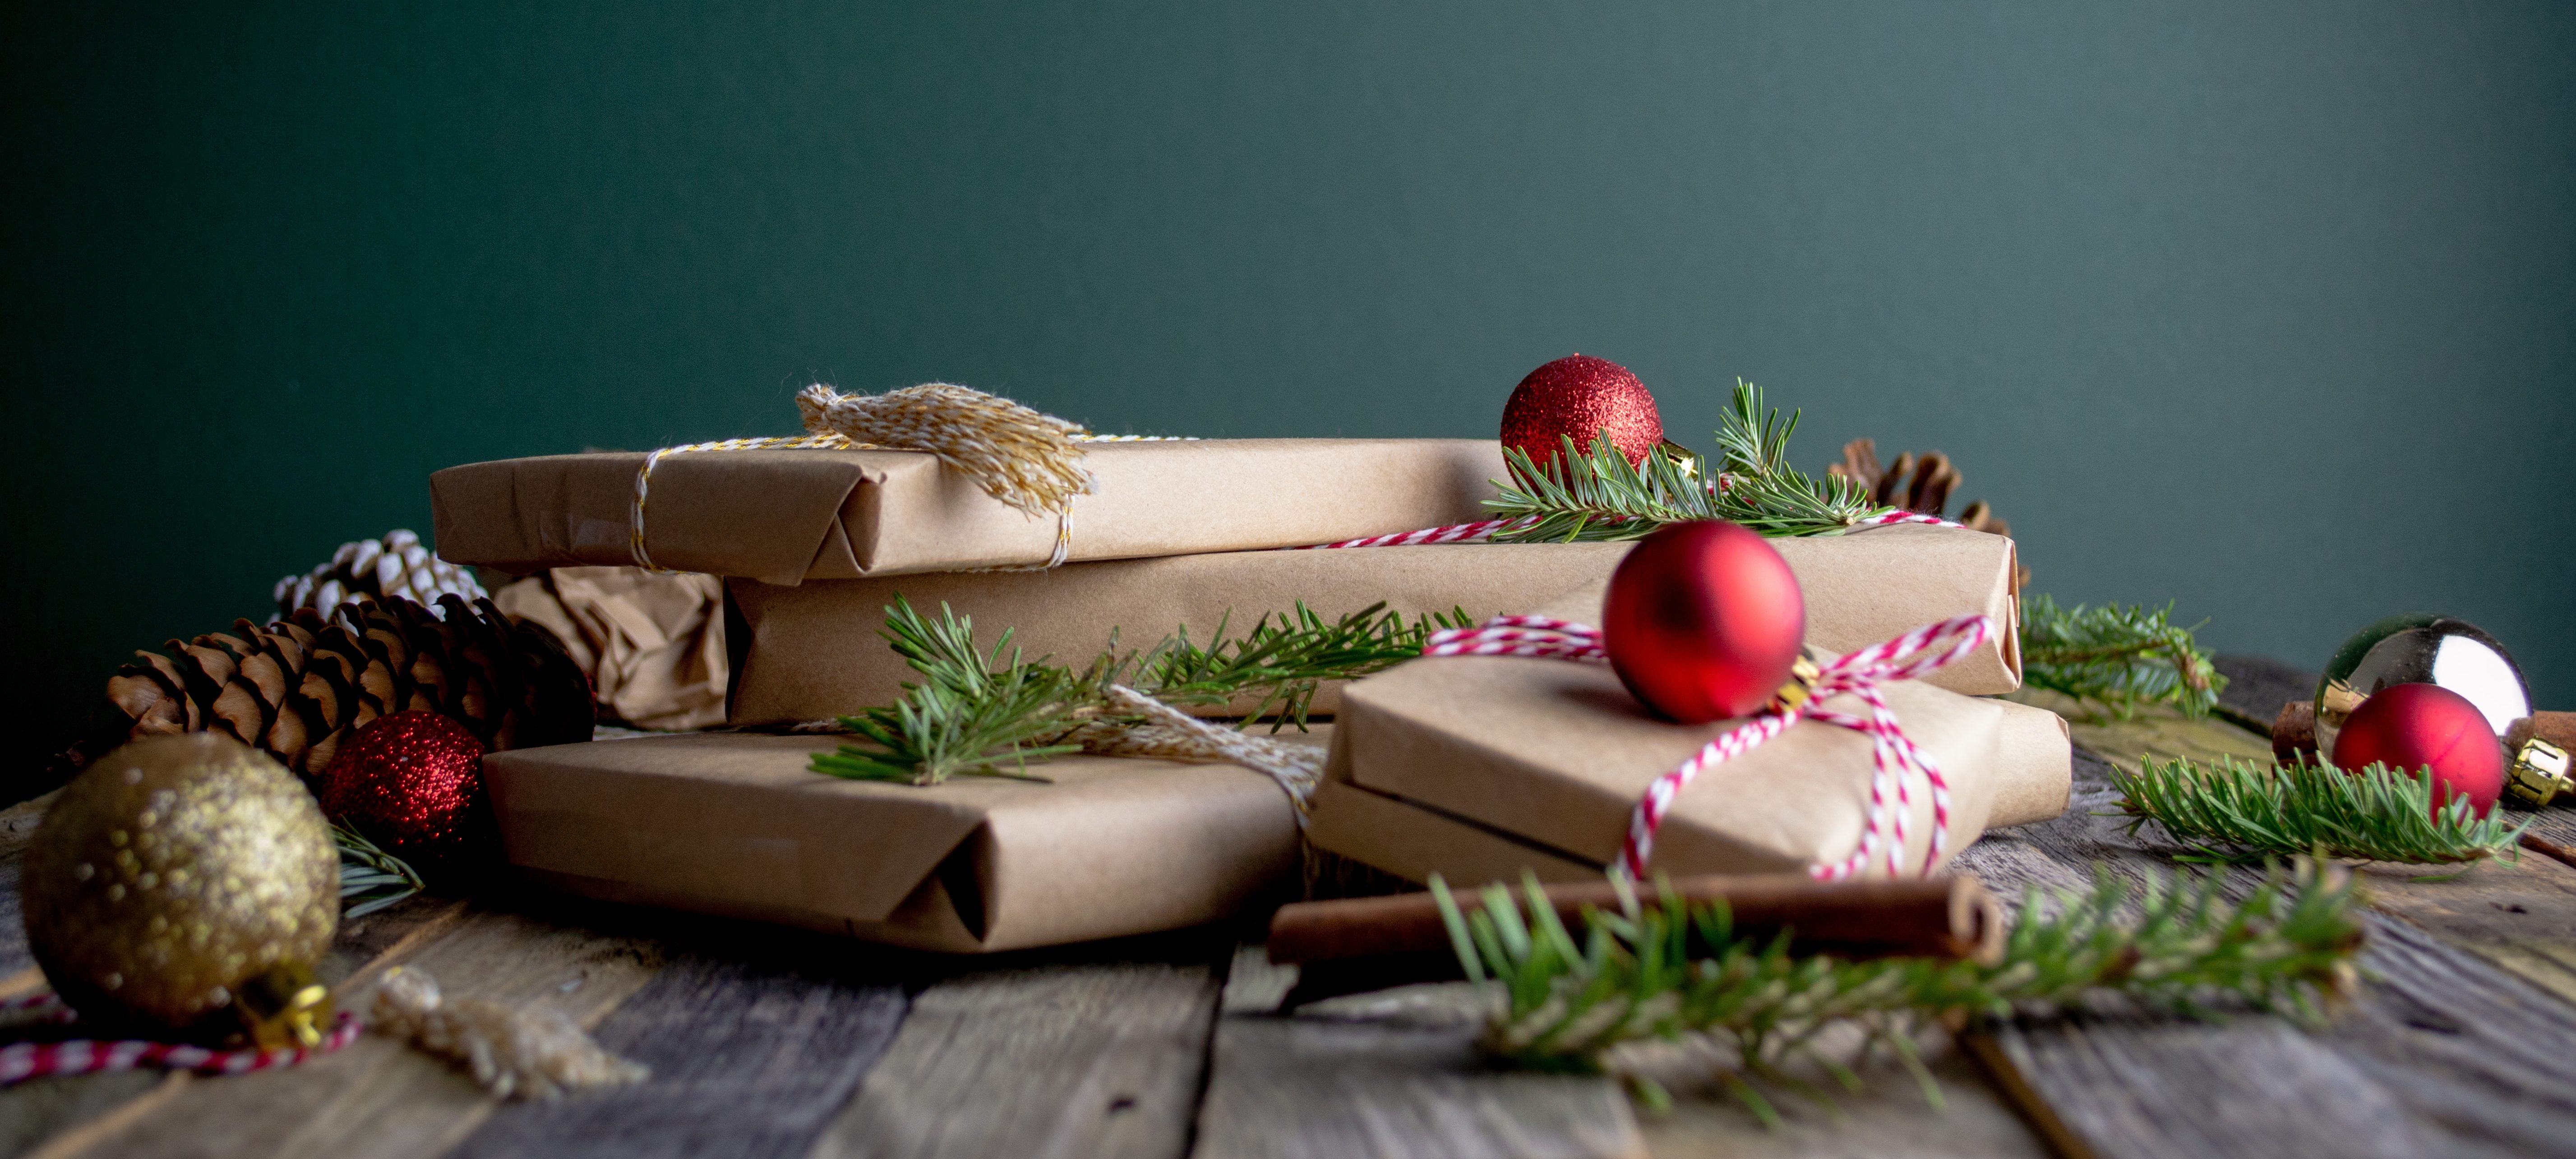 Cadeaux, repas, déco : nos conseils pour un Noël éco-responsable – Conseils  pour vivre bio